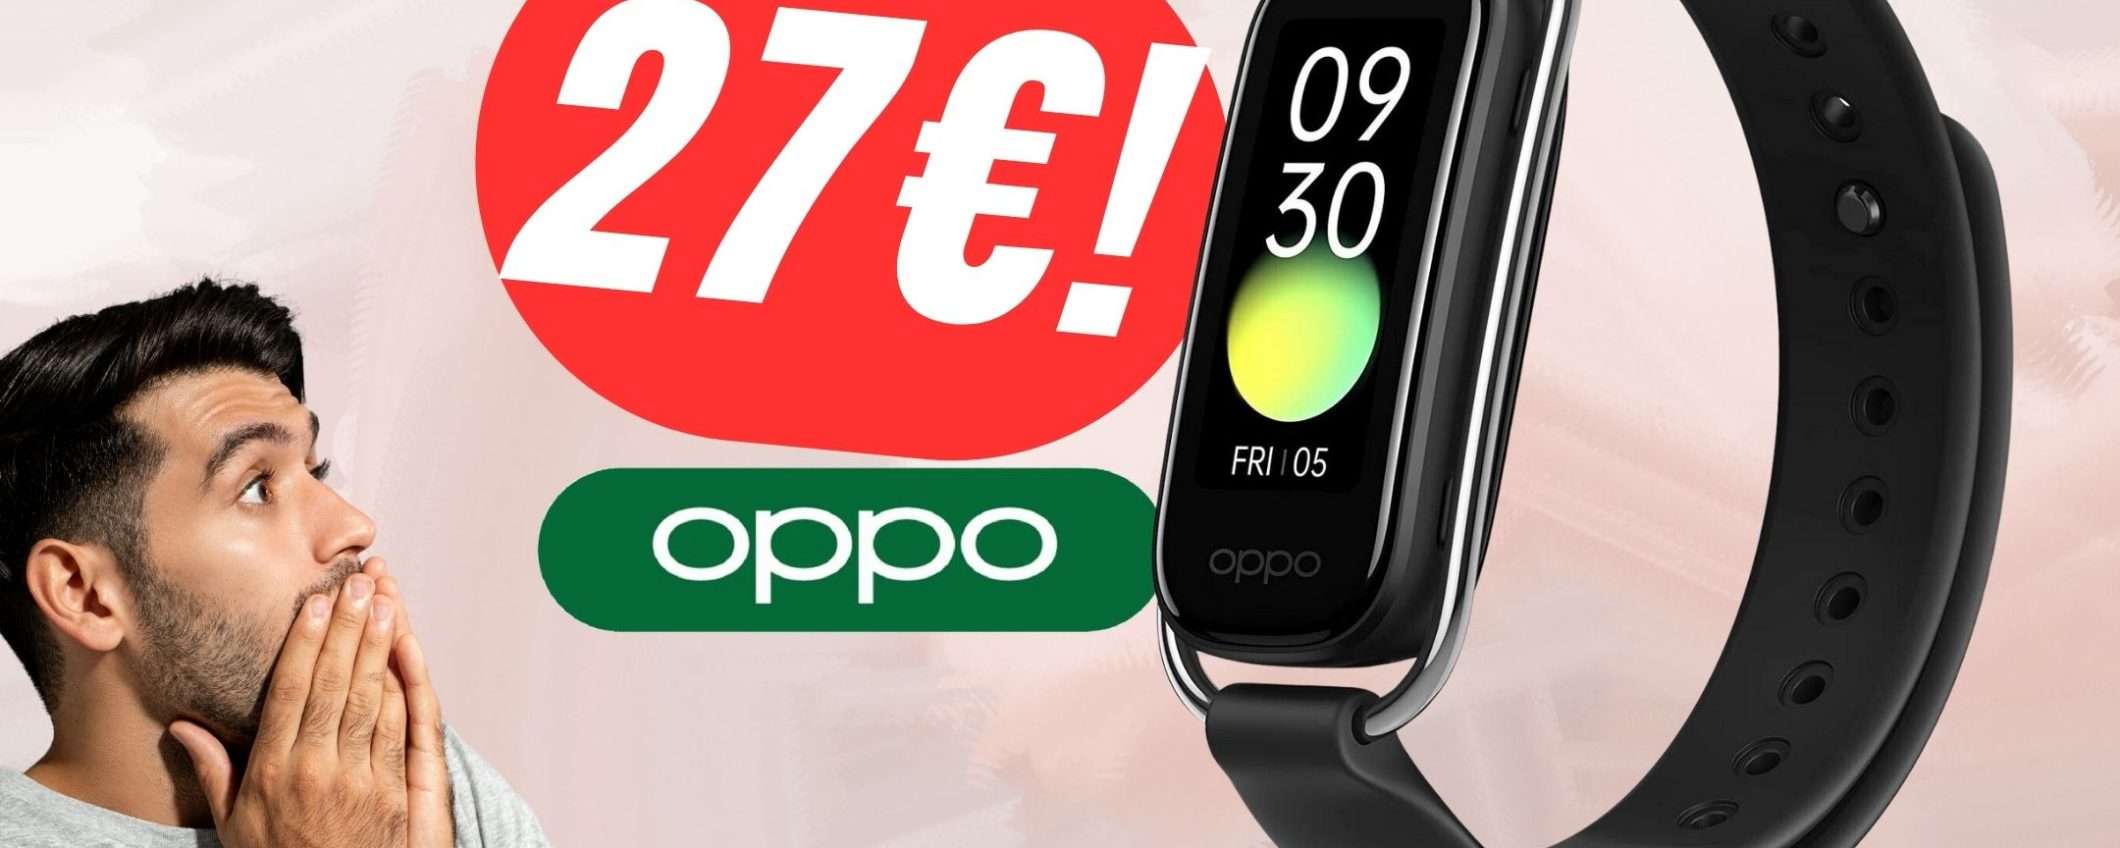 Questo Smartwatch OPPO costa solo 27€ su eBay!